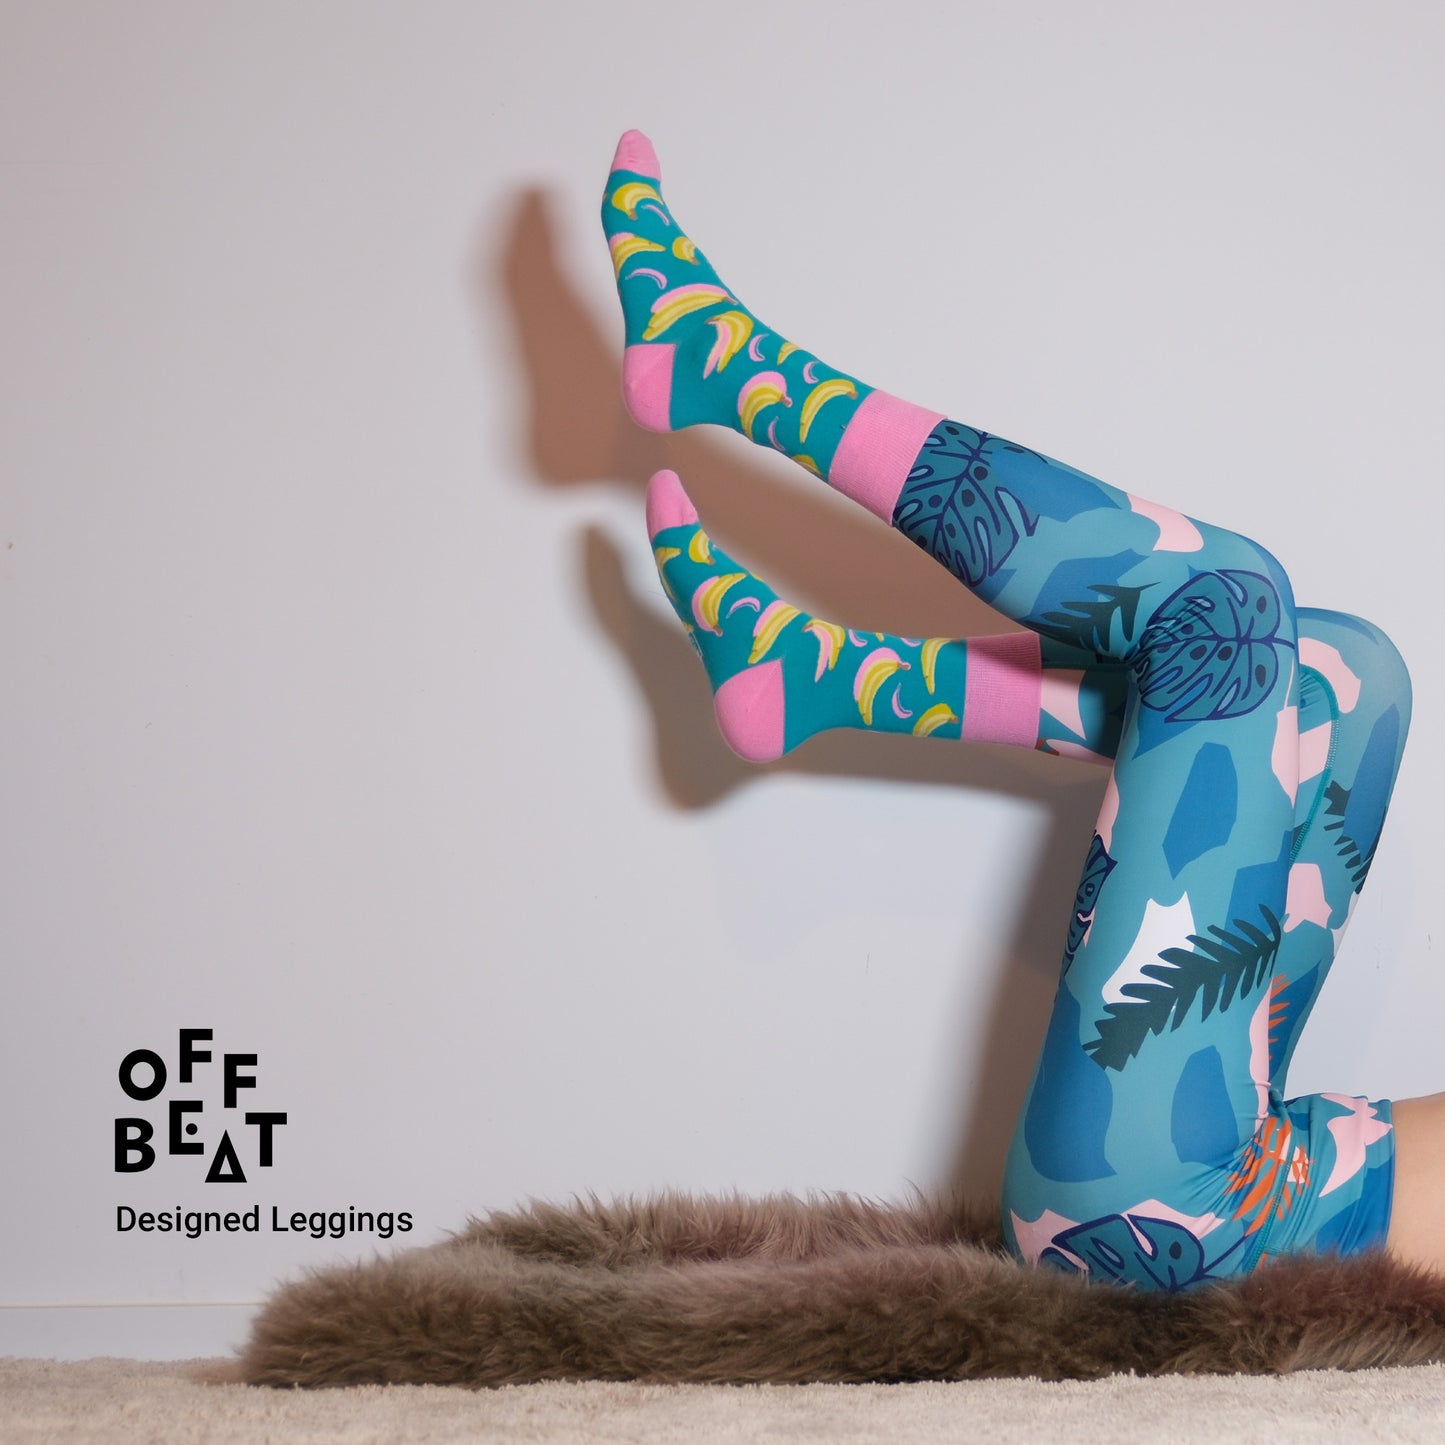 Sport/Yoga designed leggings from Offbeat, blue